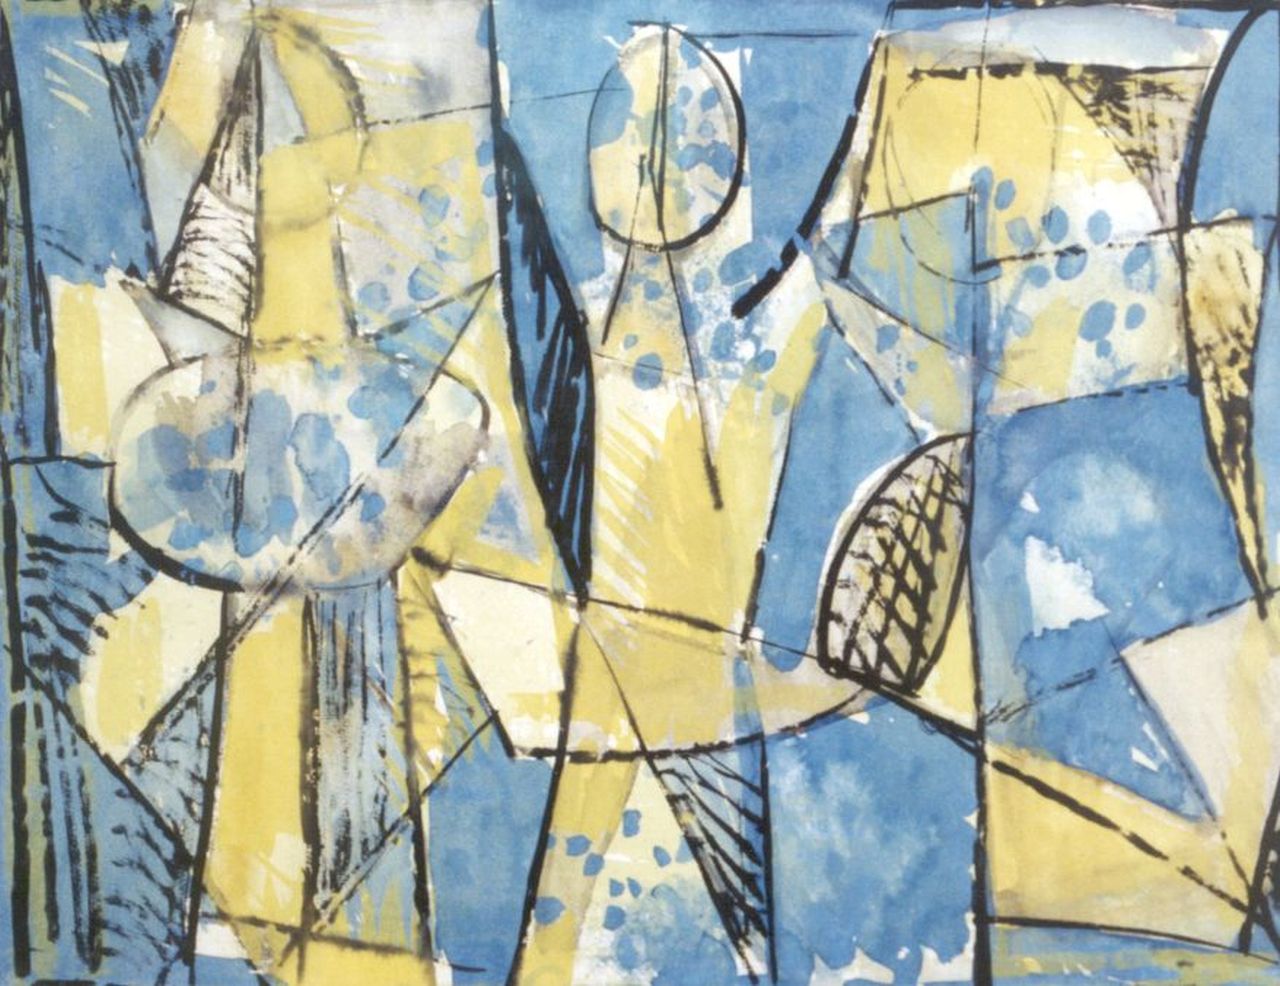 Moor C.N.E. de | Christiaan Nicolaas Everard 'Chris' de Moor, Compositie, gouache op papier 47,0 x 59,8 cm, gesigneerd rechtsonder en gedateerd '59